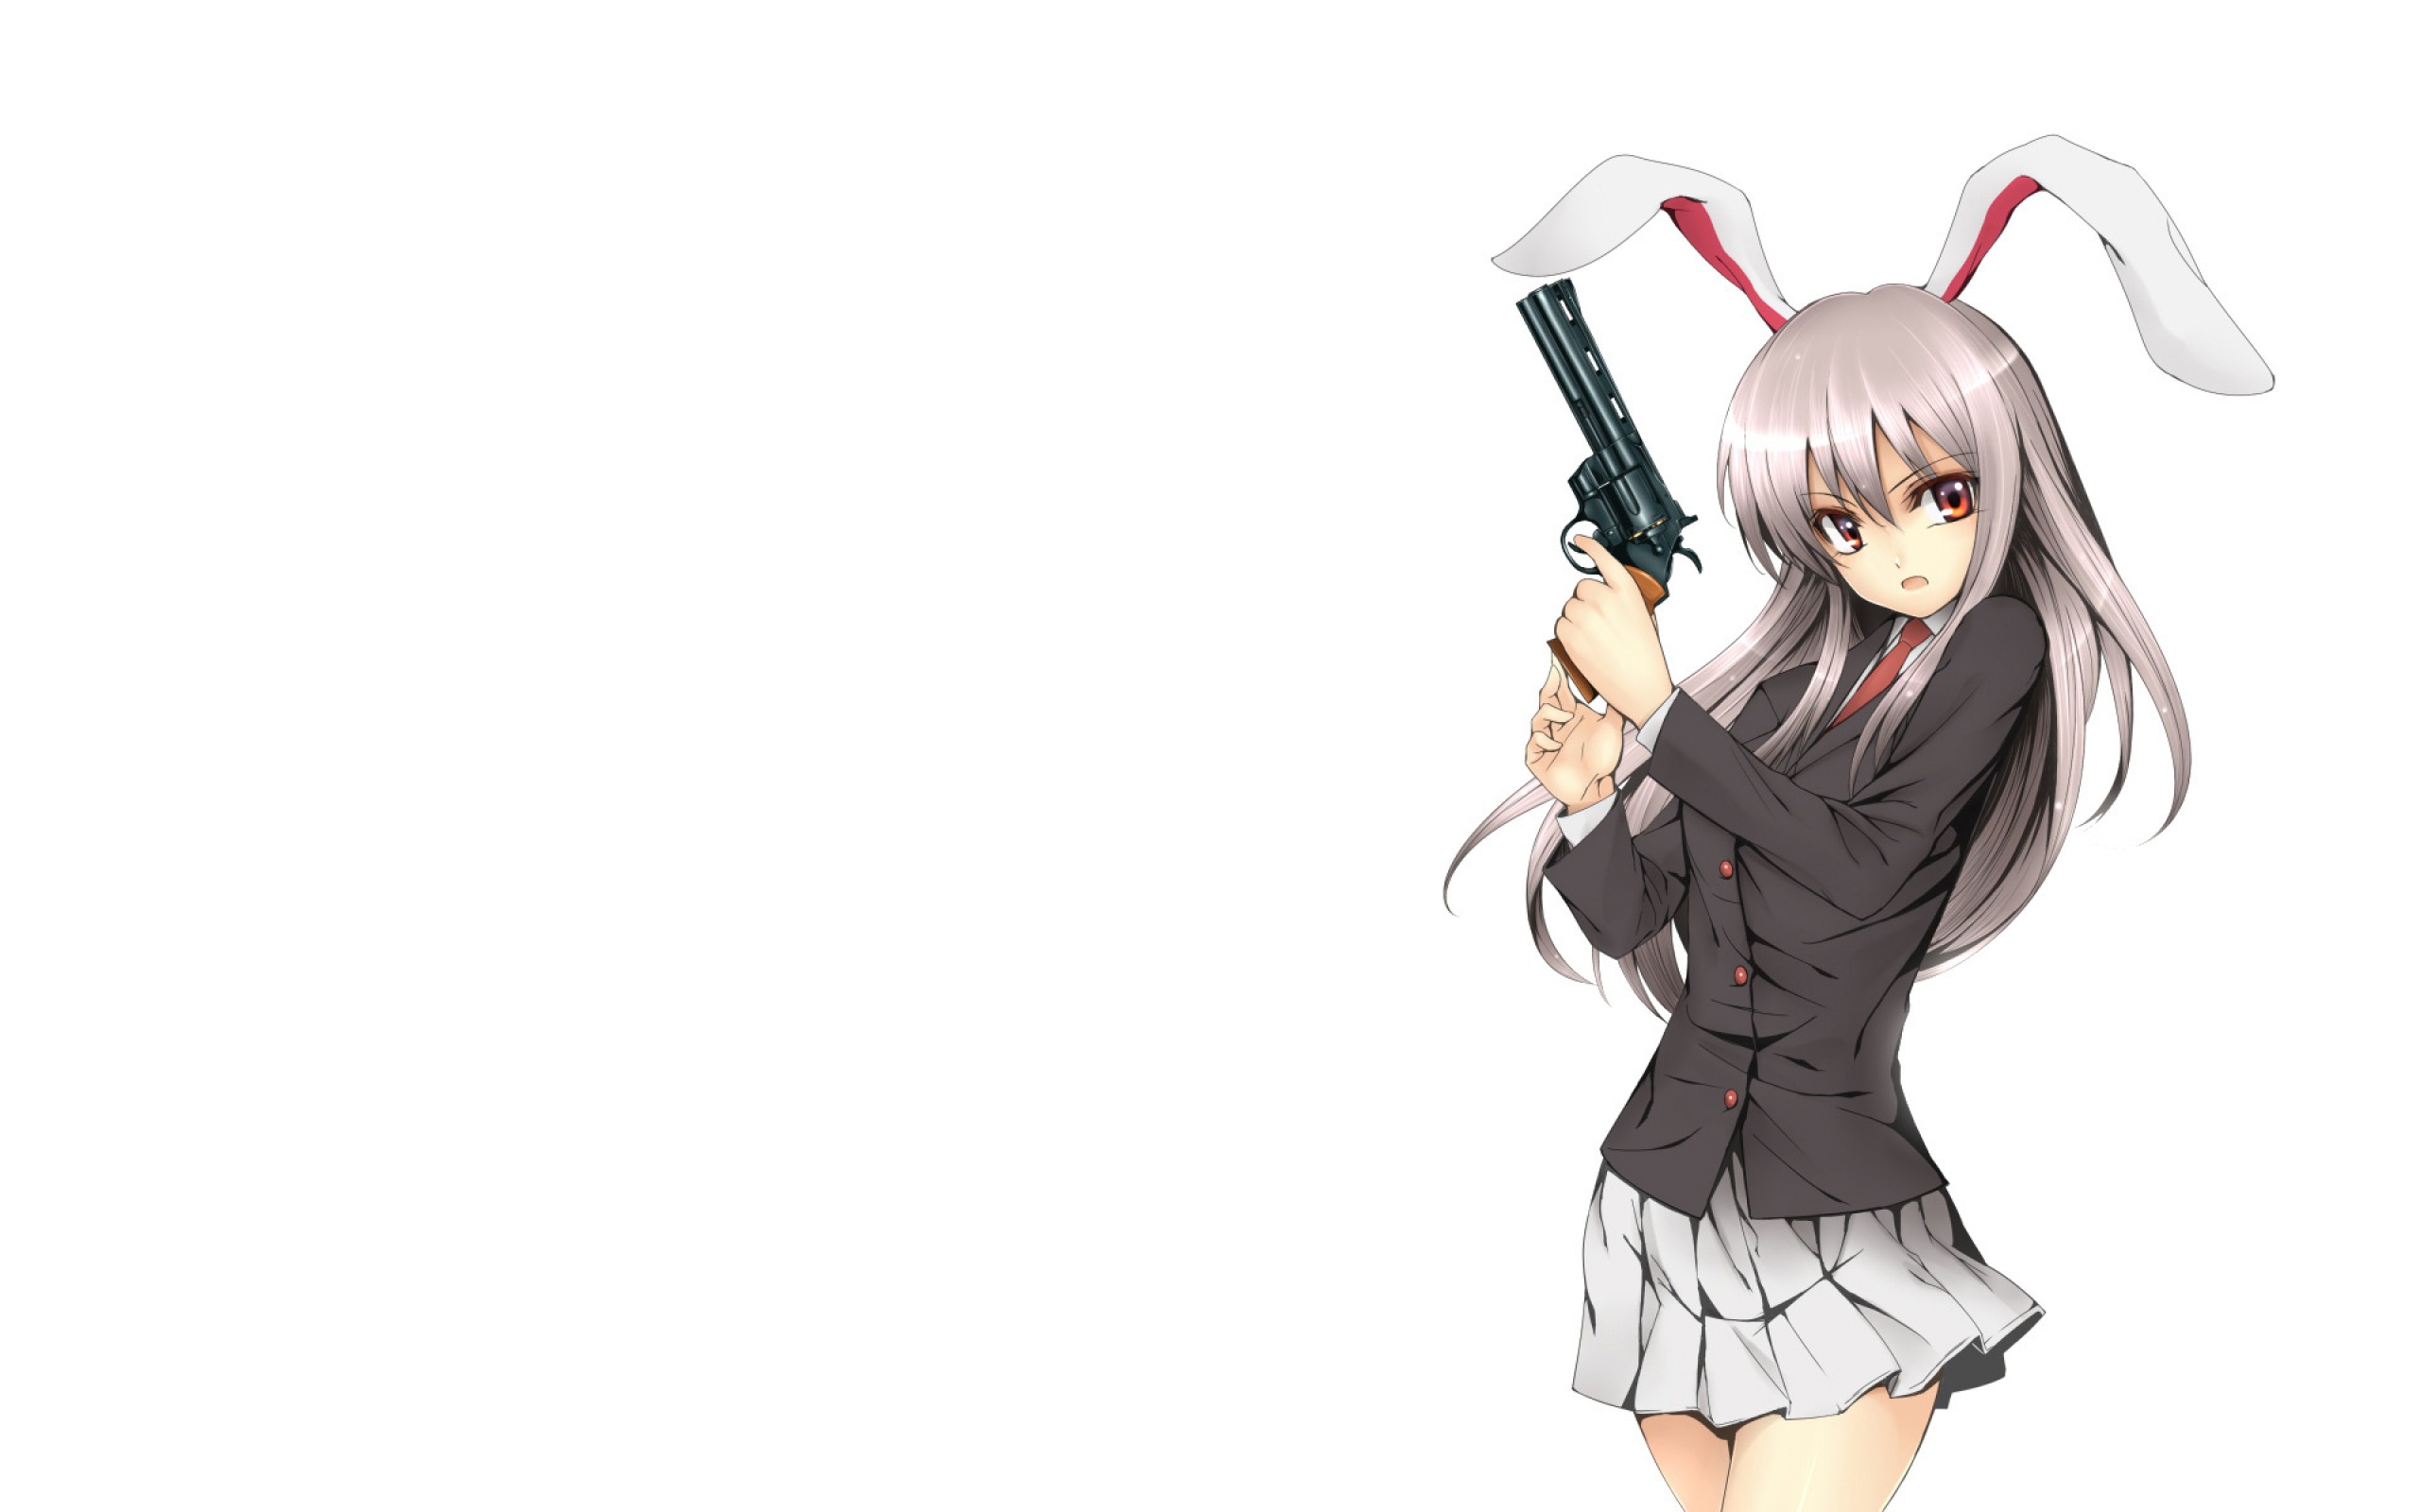 holding Anime gun girl